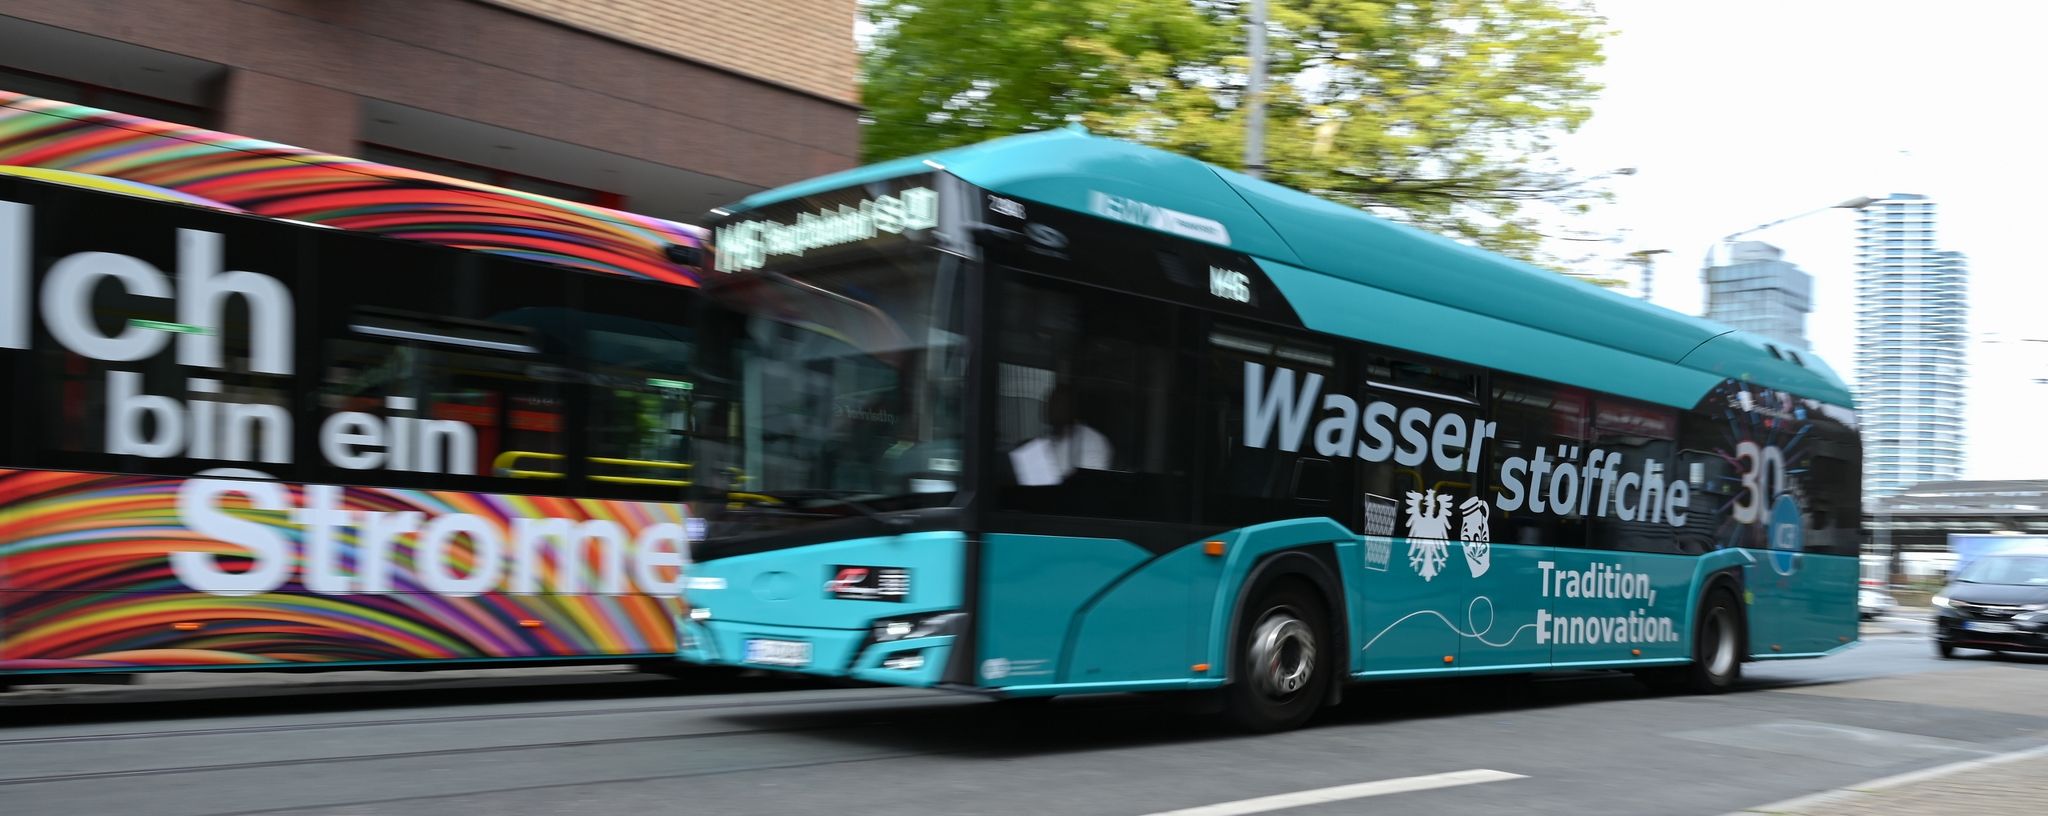 Ein Wasserstoff-Bus der Linie M46 mit der Aufschrift "Wasserstöffche" fährt am Hauptbahnhof an einem E-Bus vorbei.